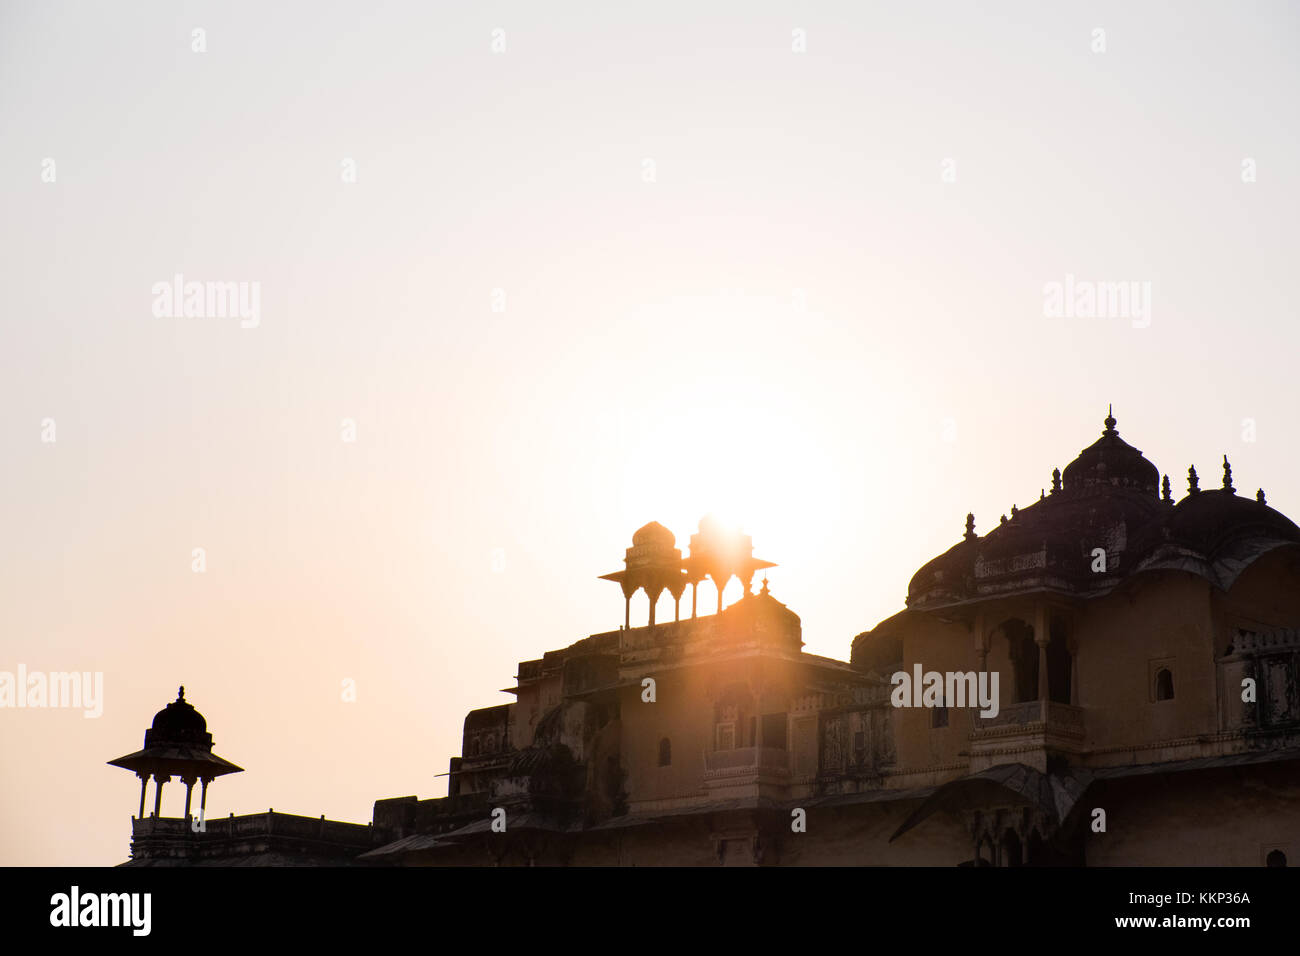 Les tourelles et les coupoles d'un palais indien contre un coucher de soleil, Bundi, Rajasthan, Inde Banque D'Images